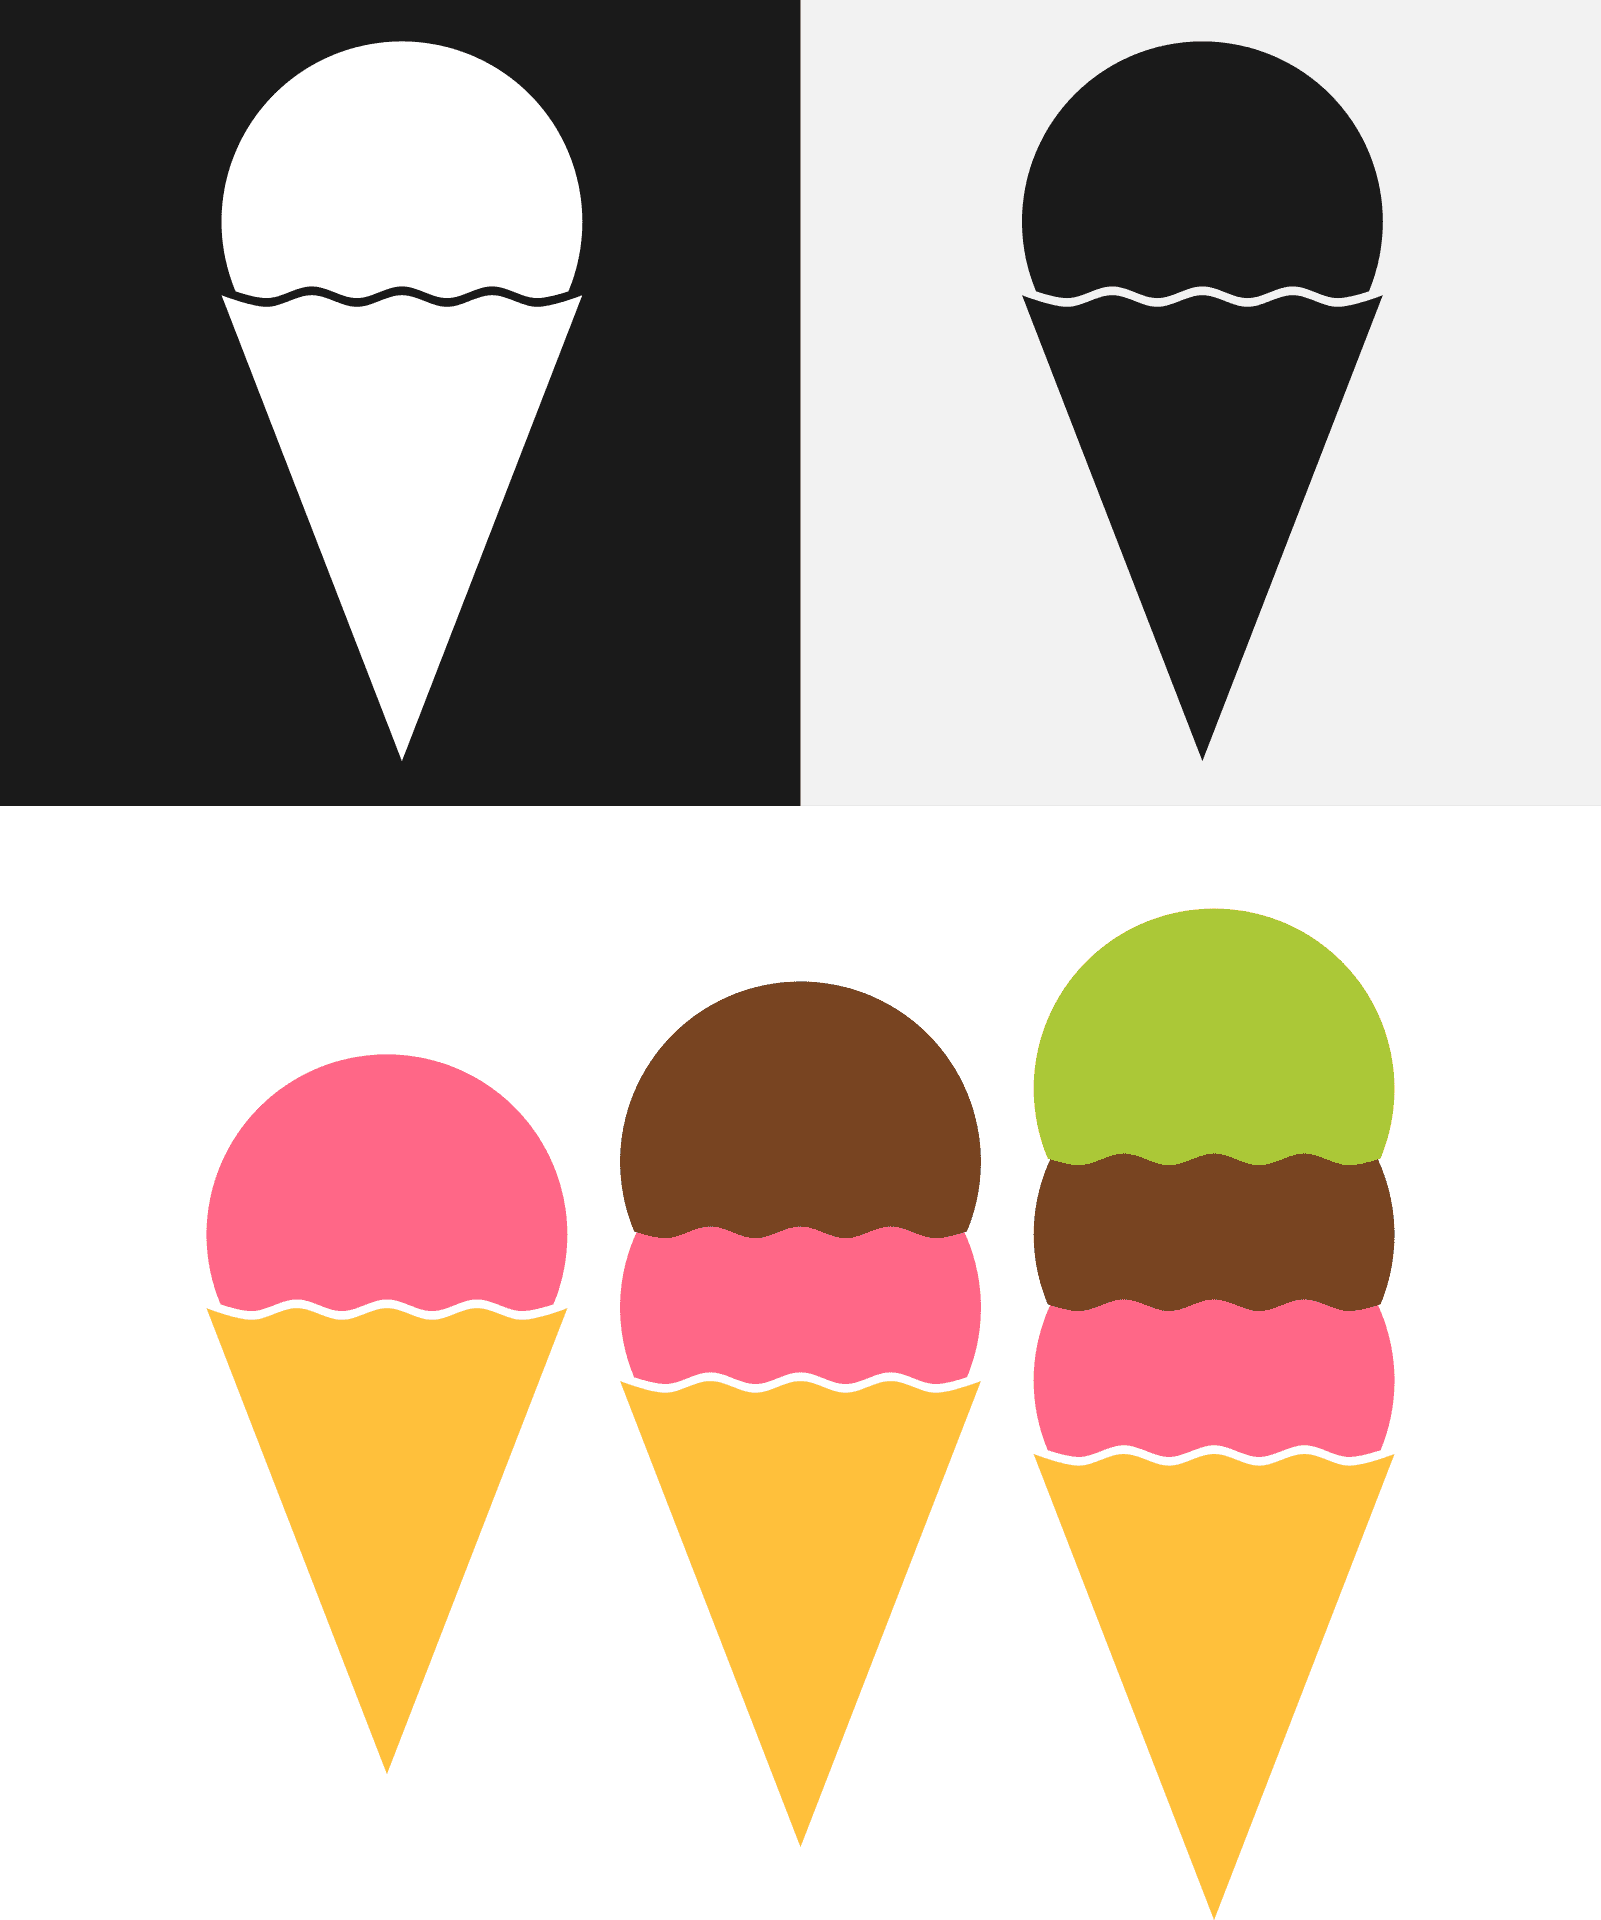 عکس پس زمینه از بستنی های اسکوپی در سه رنگ زیبا و کیوت